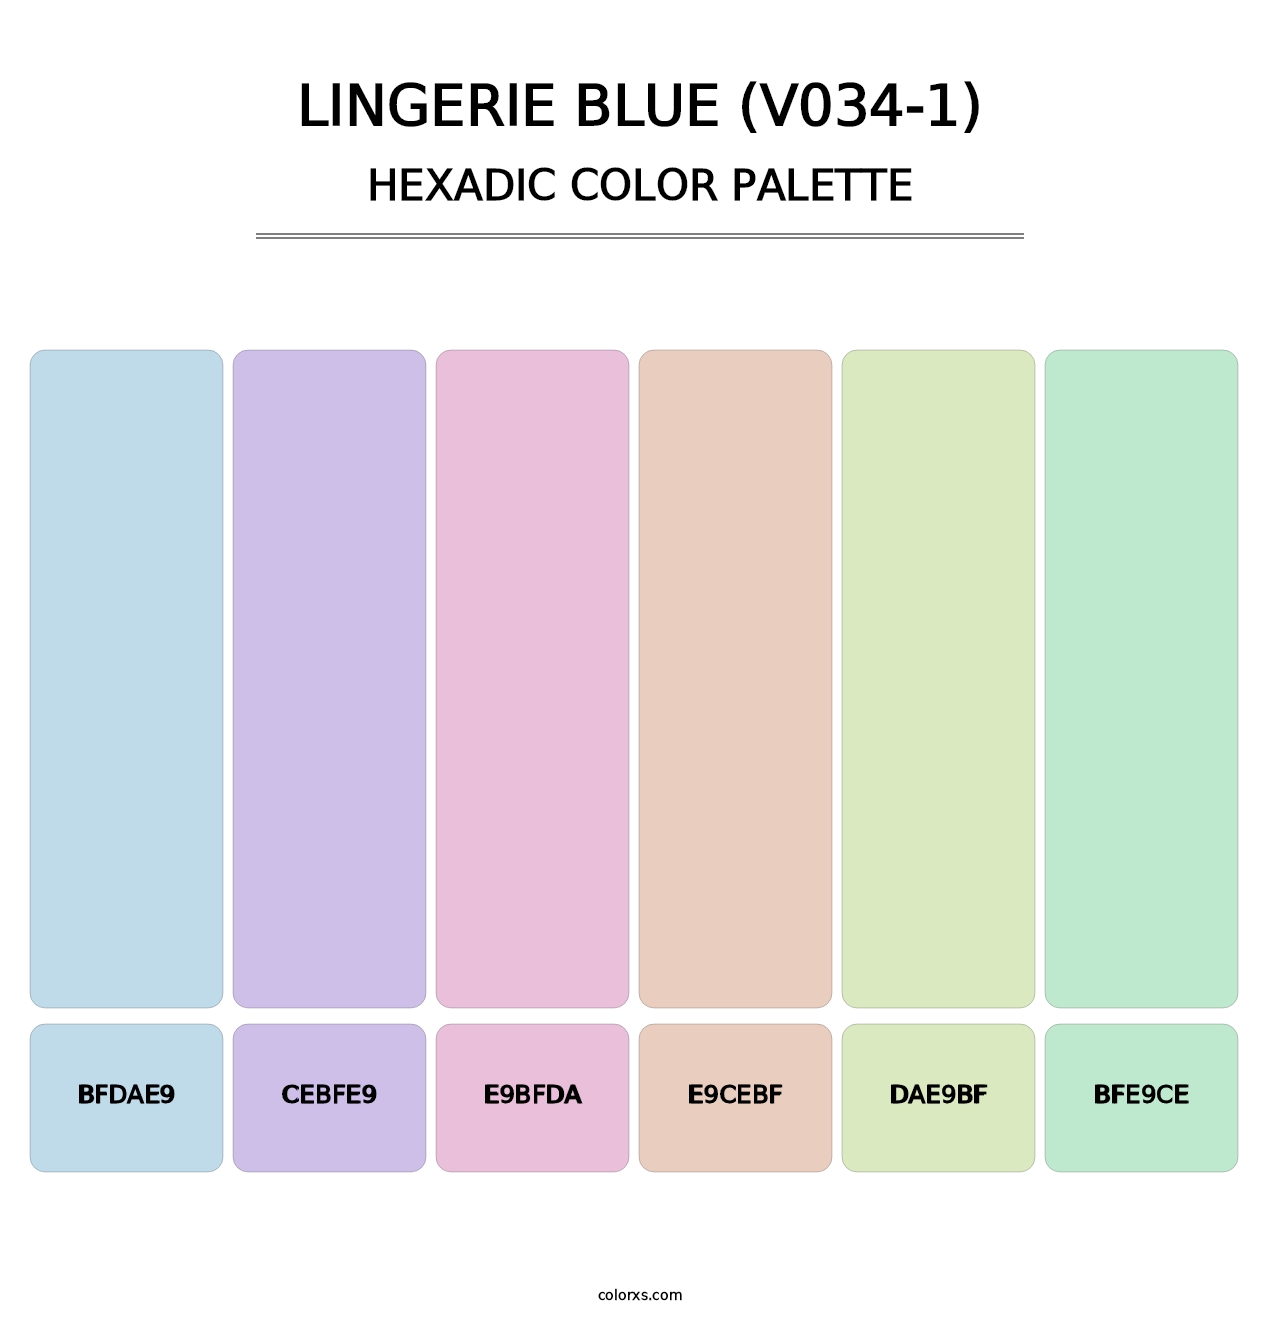 Lingerie Blue (V034-1) - Hexadic Color Palette